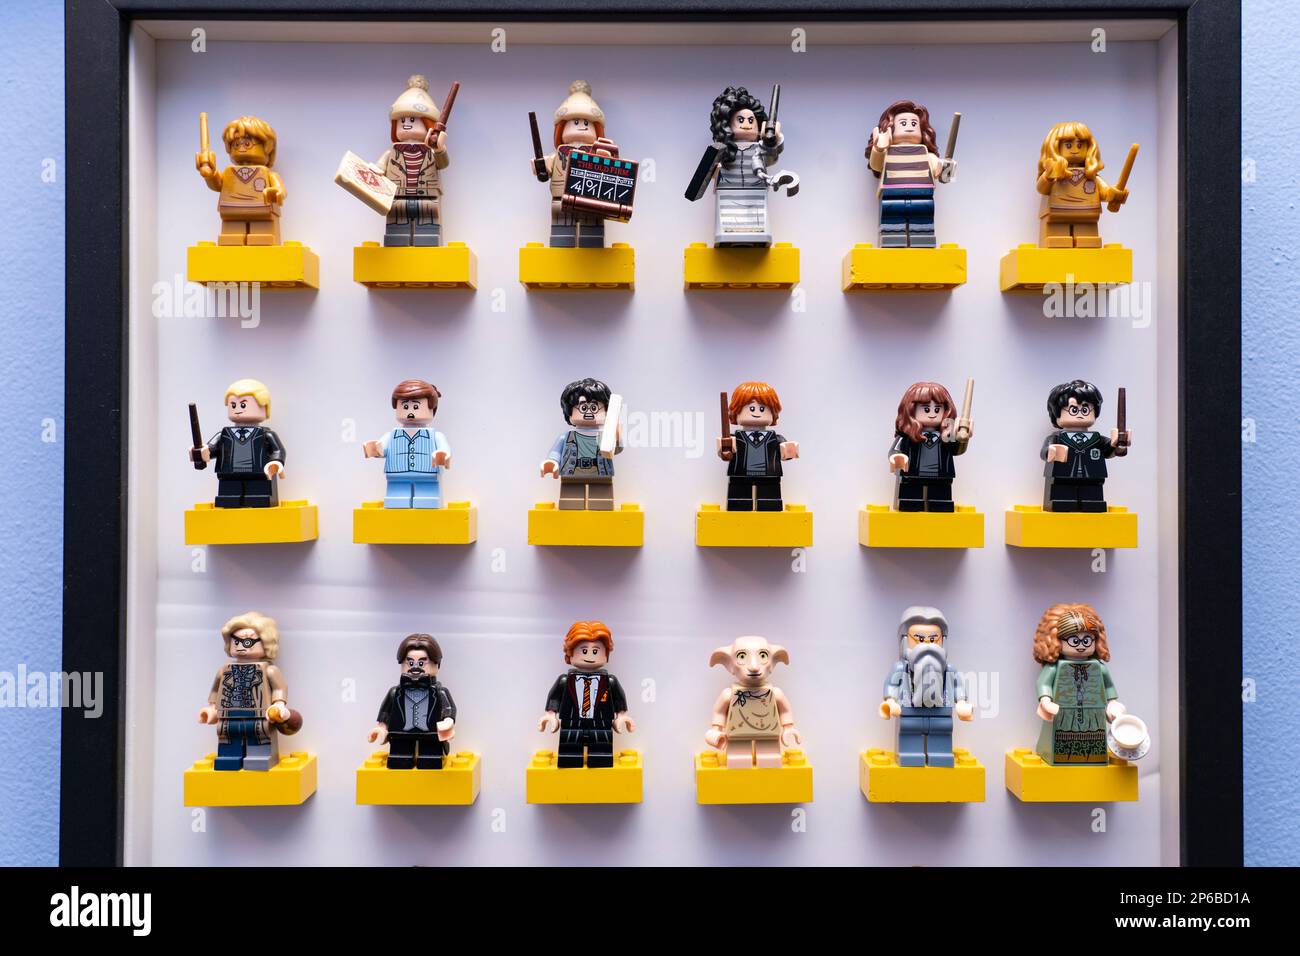 Personnages lego sur le thème de Harry Potter de la série LEGO Wizarding World sur des briques lego dans un cadre mural. ROYAUME-UNI Banque D'Images